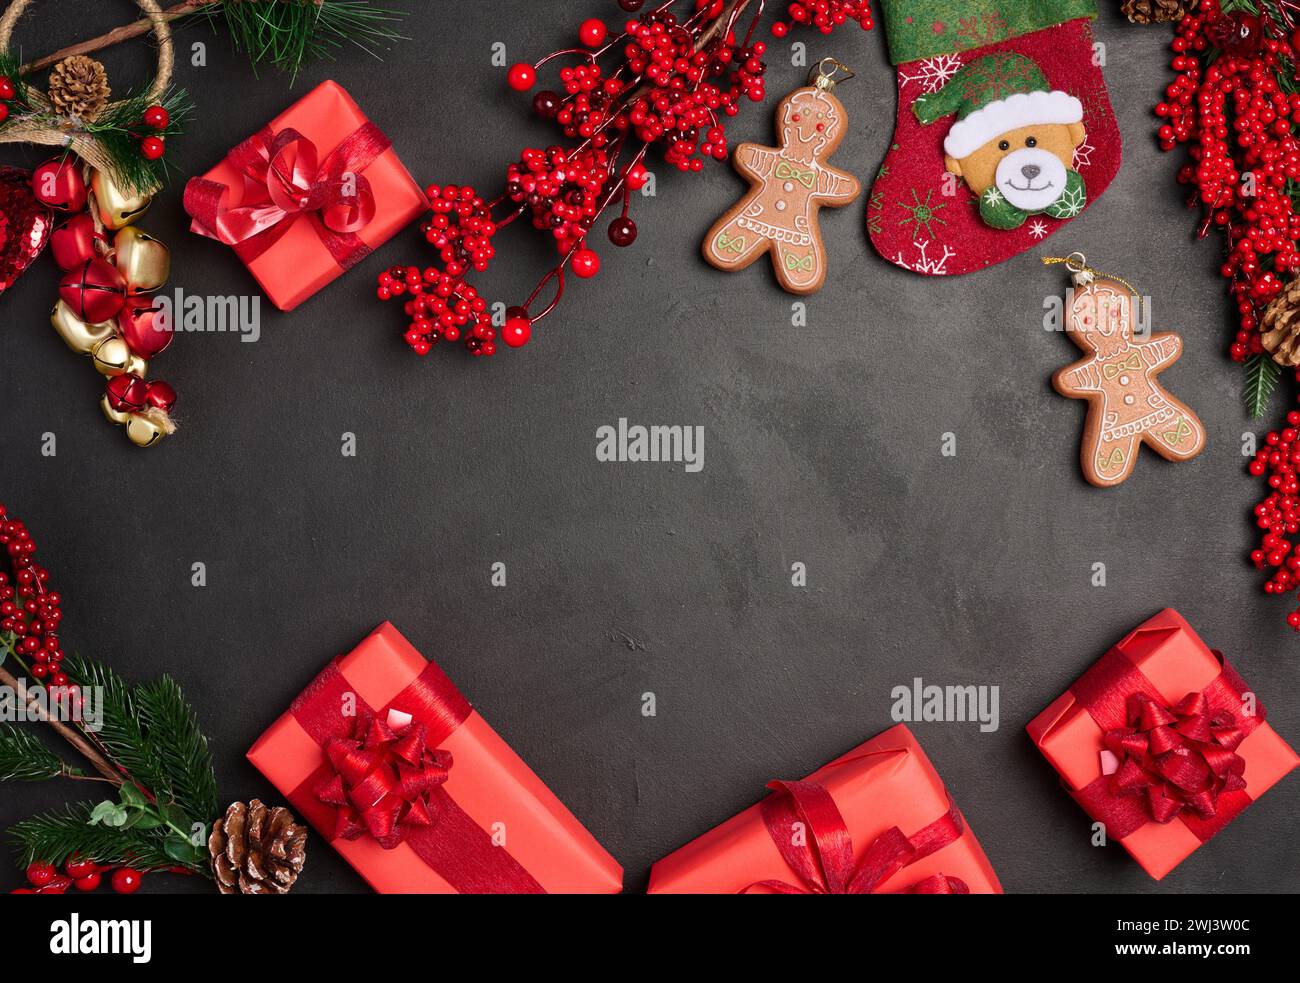 Décor de Noël, boîtes rouges cadeaux sur fond noir, vue de dessus. Banque D'Images